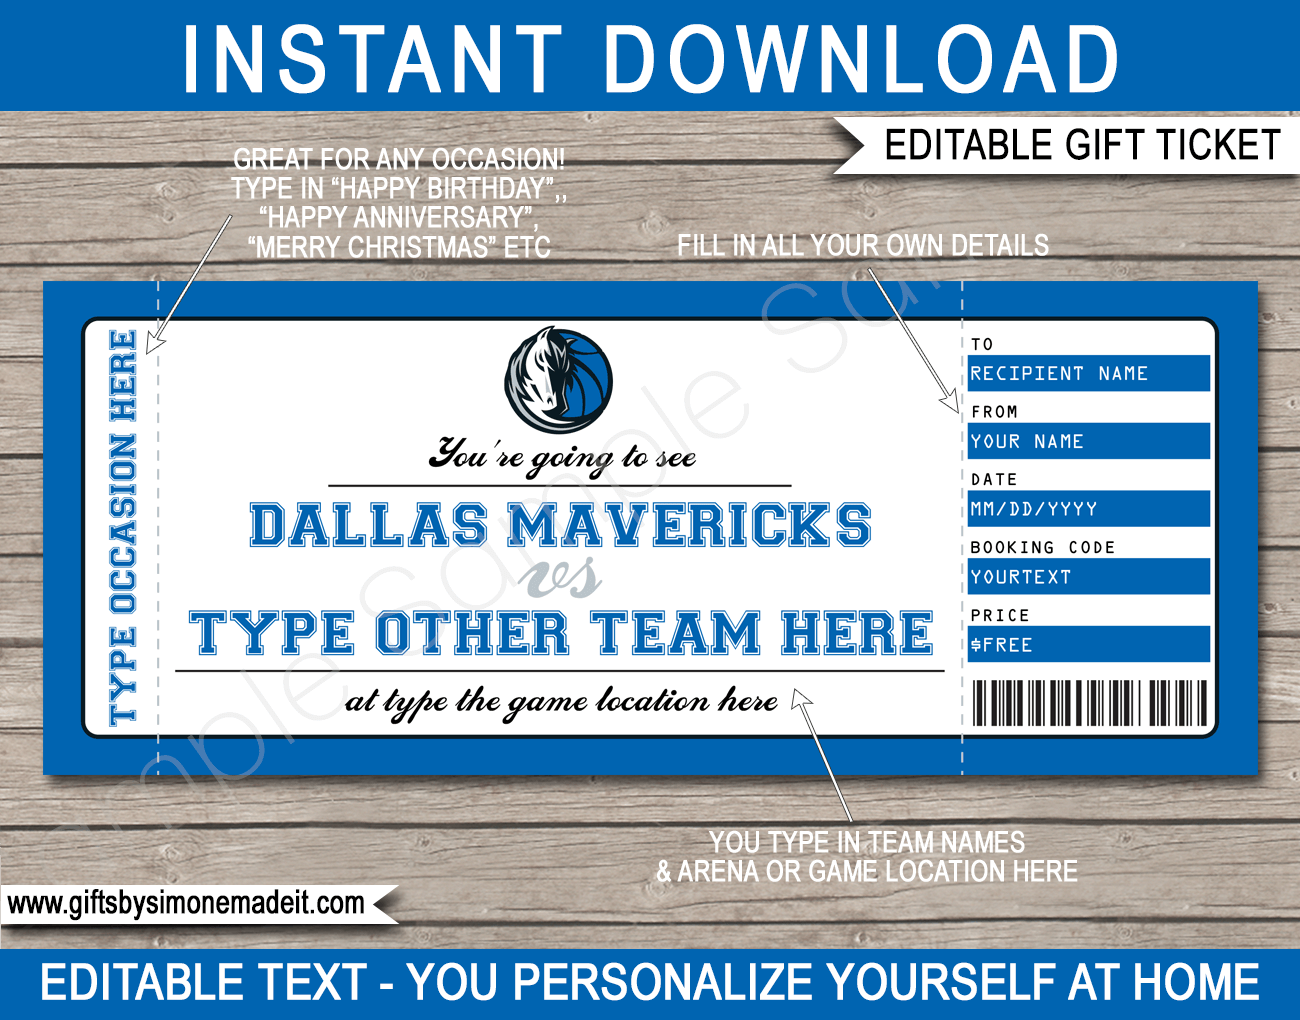 Dallas Mavericks Gift Cards from Fanatics, Dallas Mavericks Online